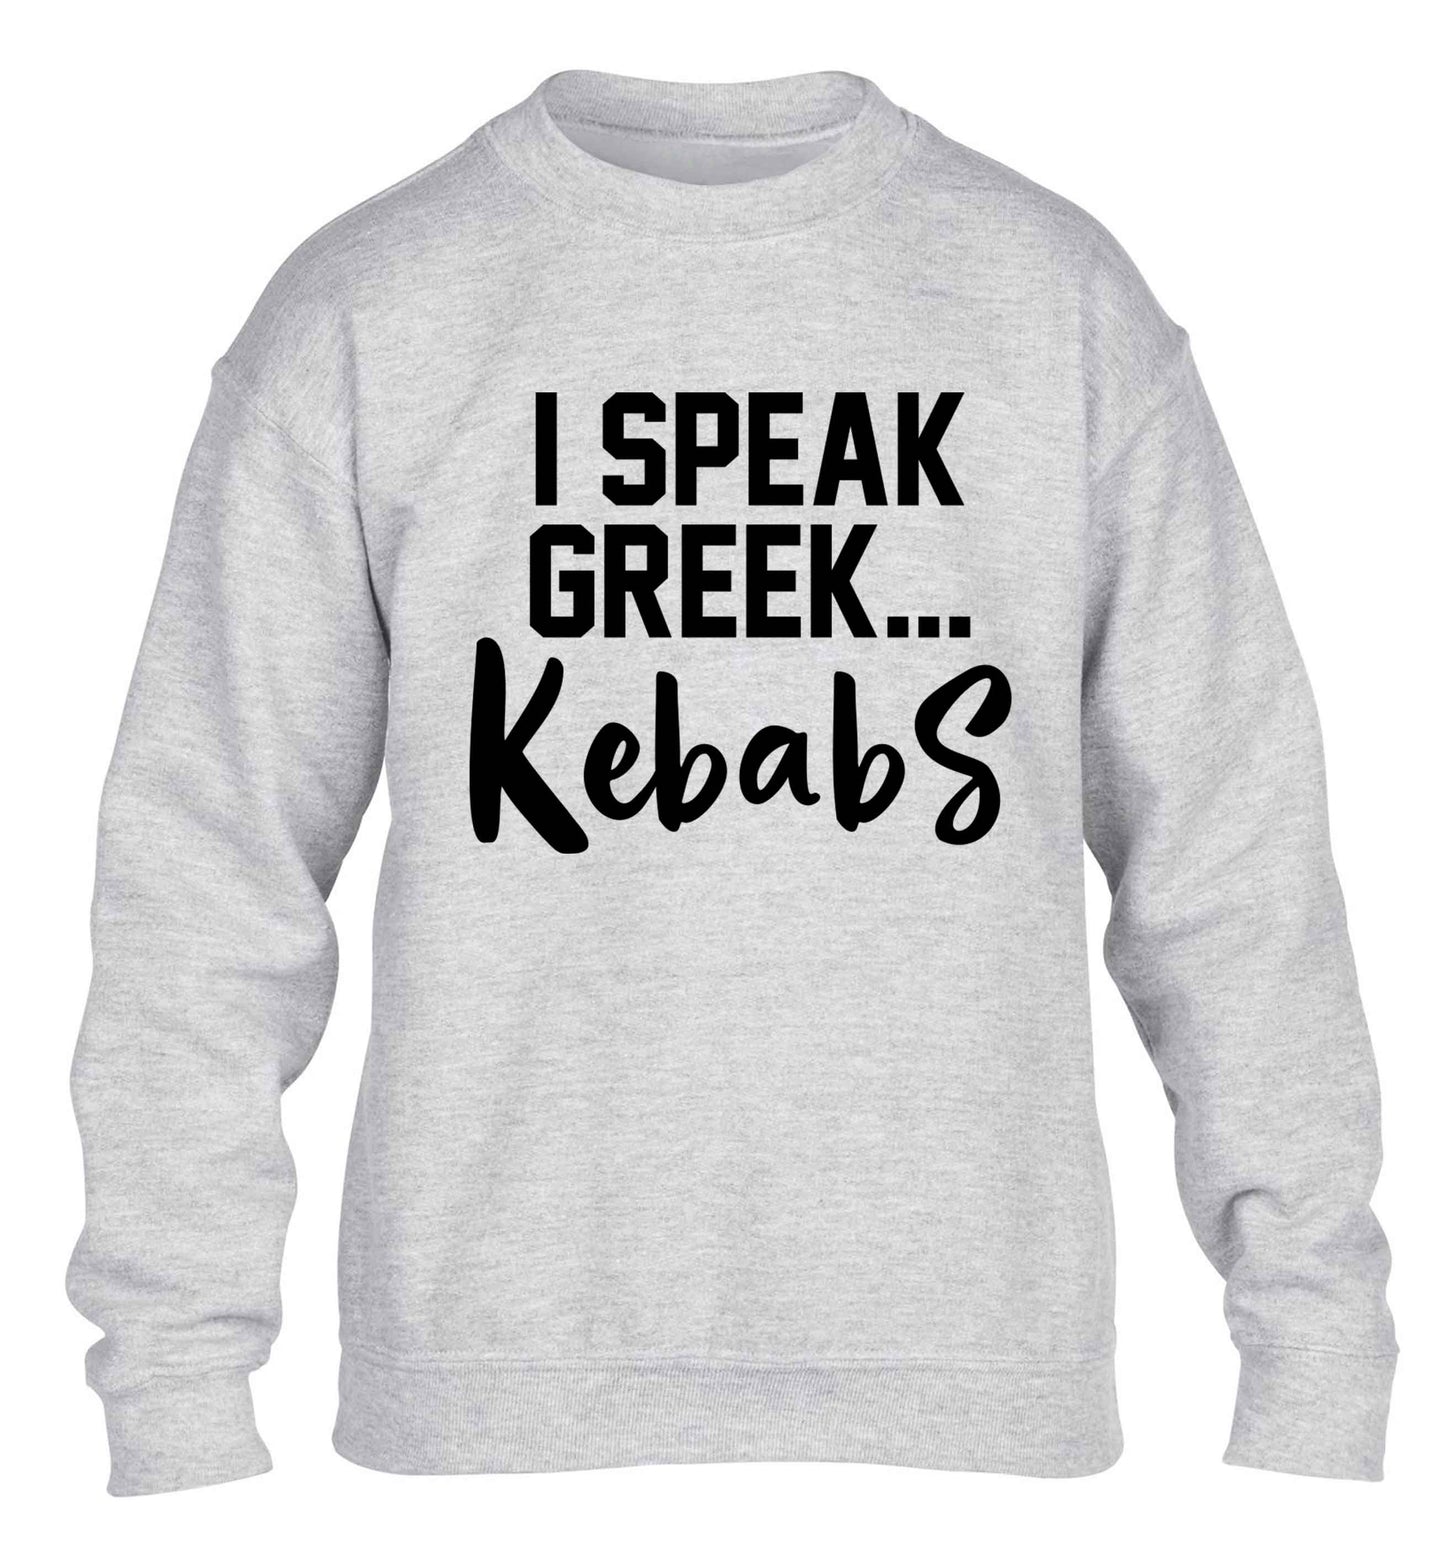 I speak Greek...kebabs children's grey sweater 12-13 Years